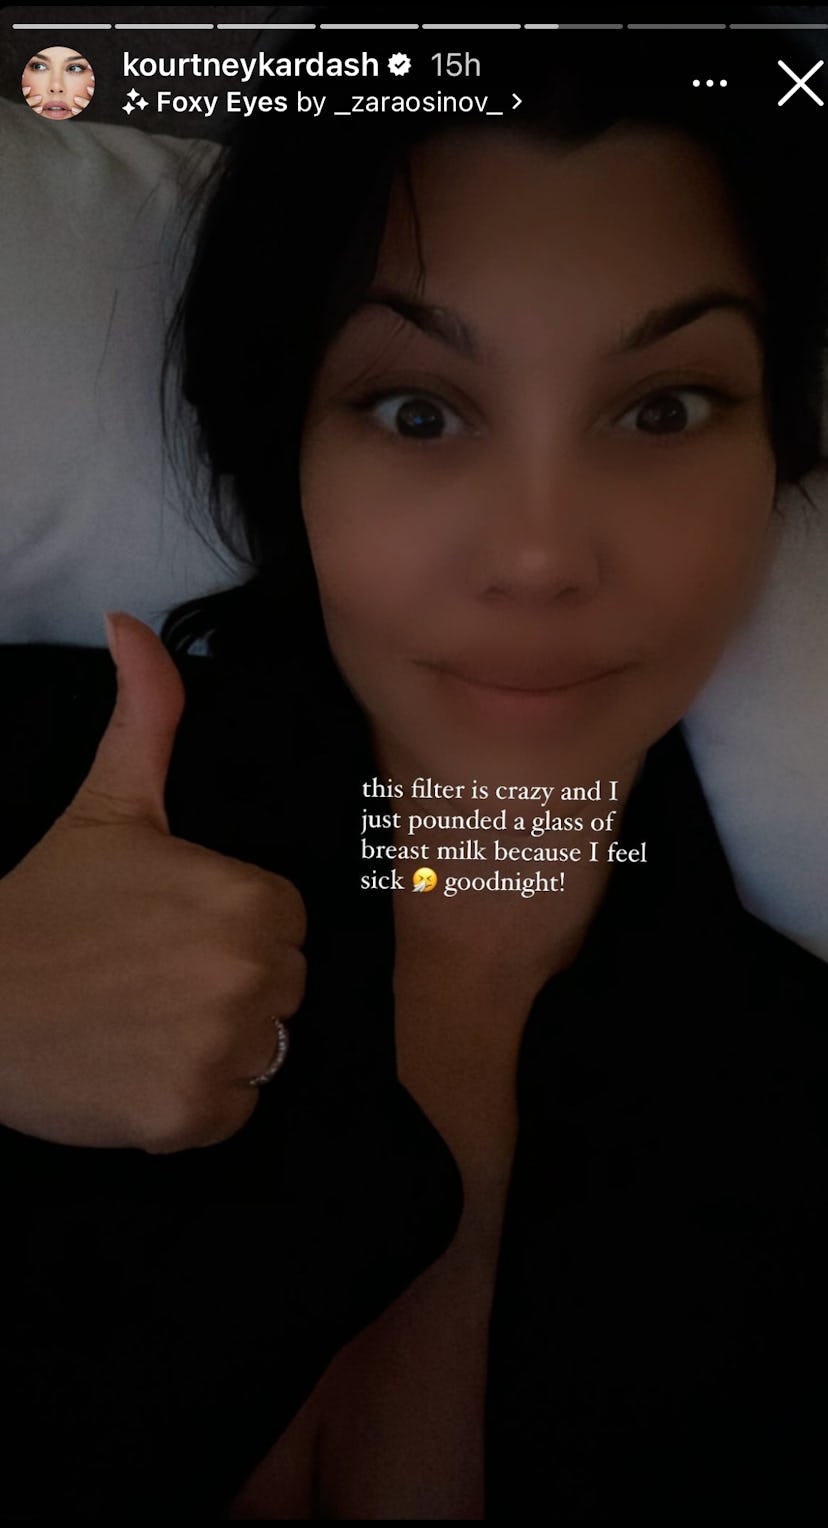 A screenshot from Kourtney Kardashian's Instagram Story